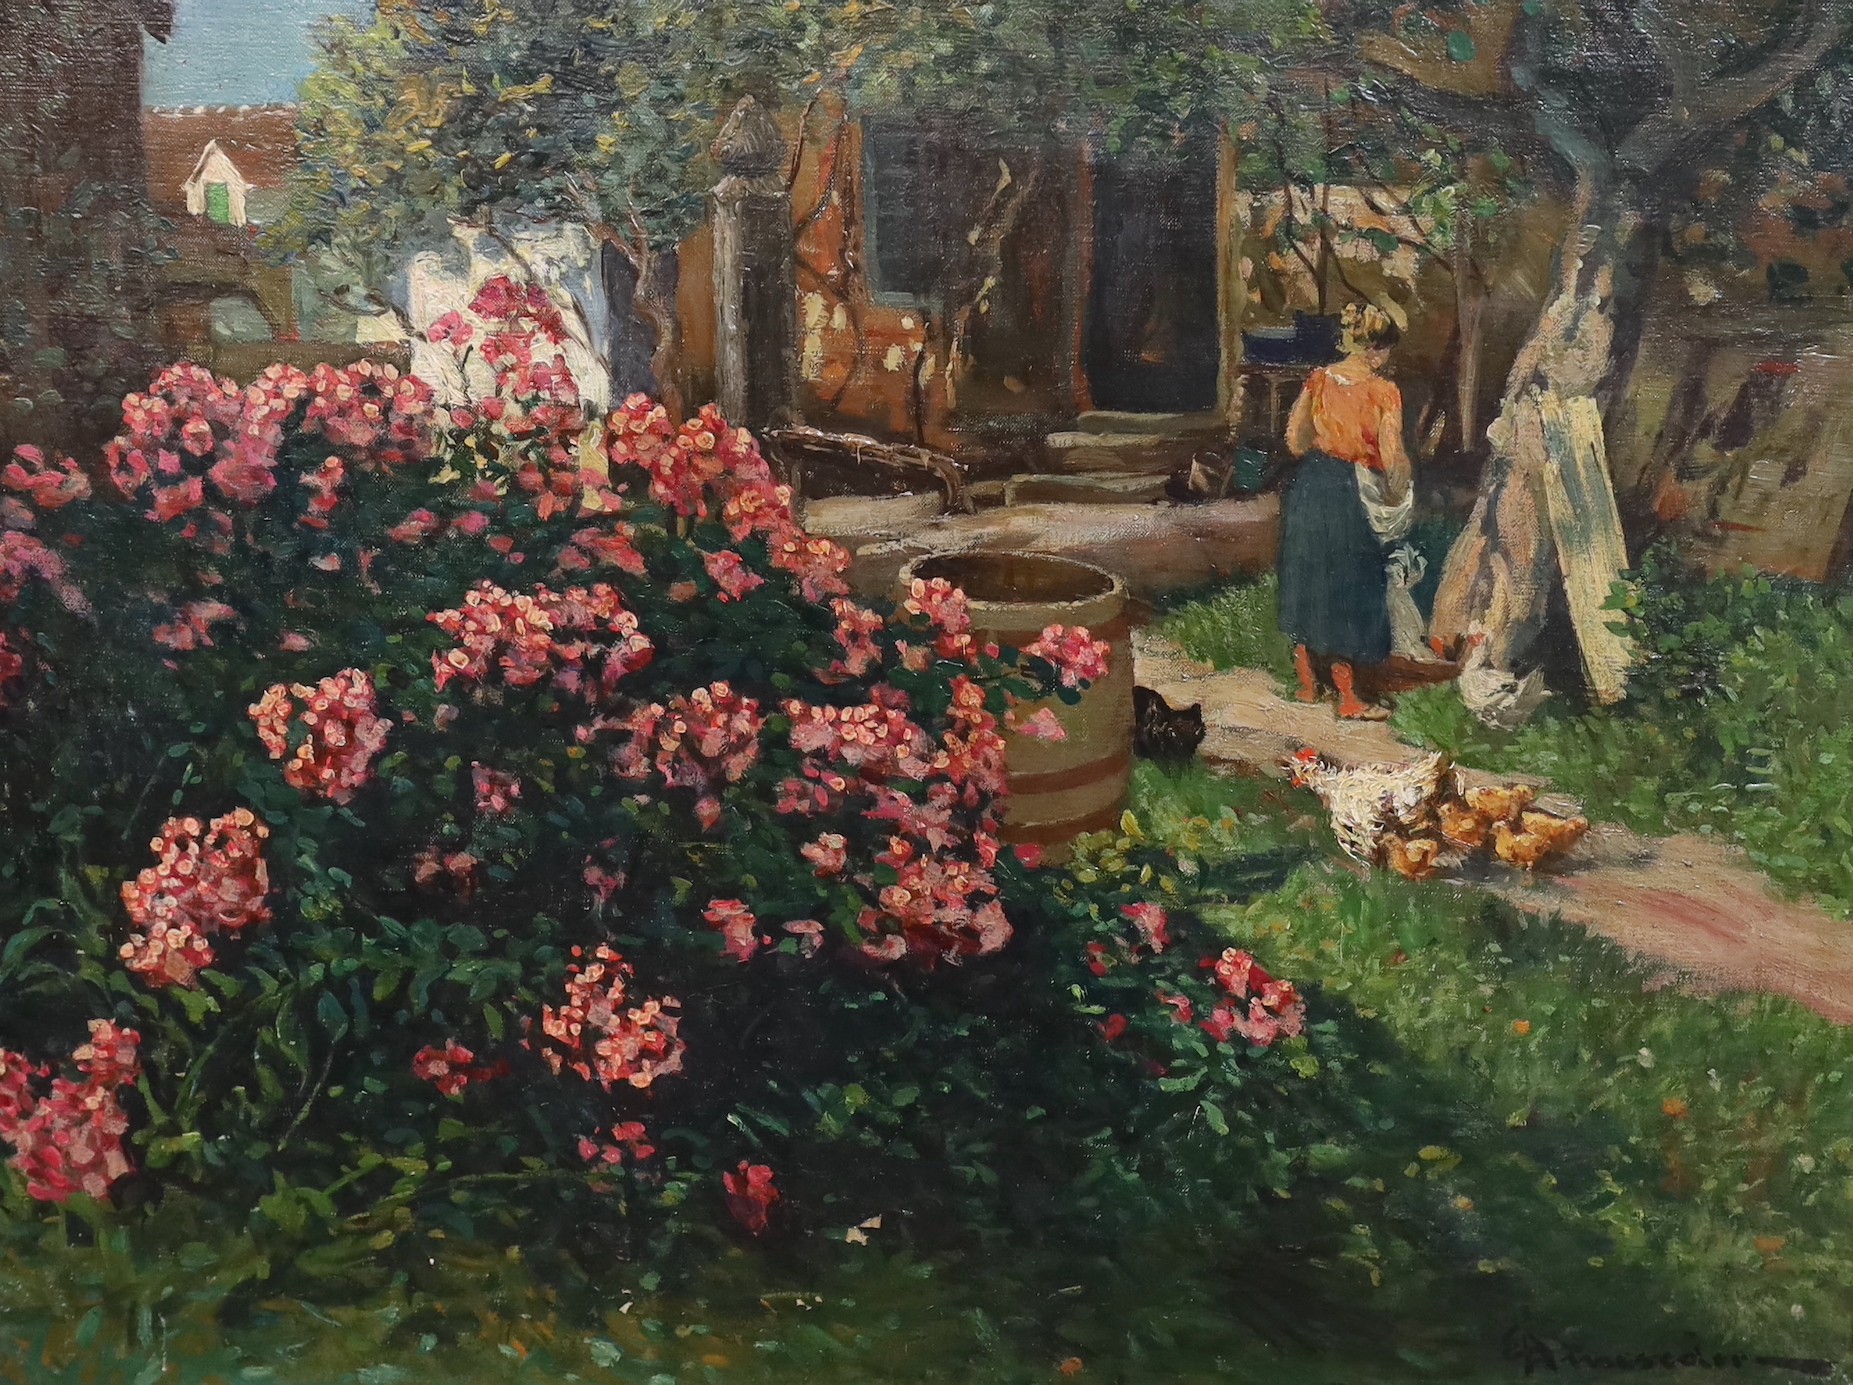 Eduard Ameseder (Austrian, 1856-1938), 'Steirischer Bauernhof c.1913', oil on canvas, 44 x 58cm